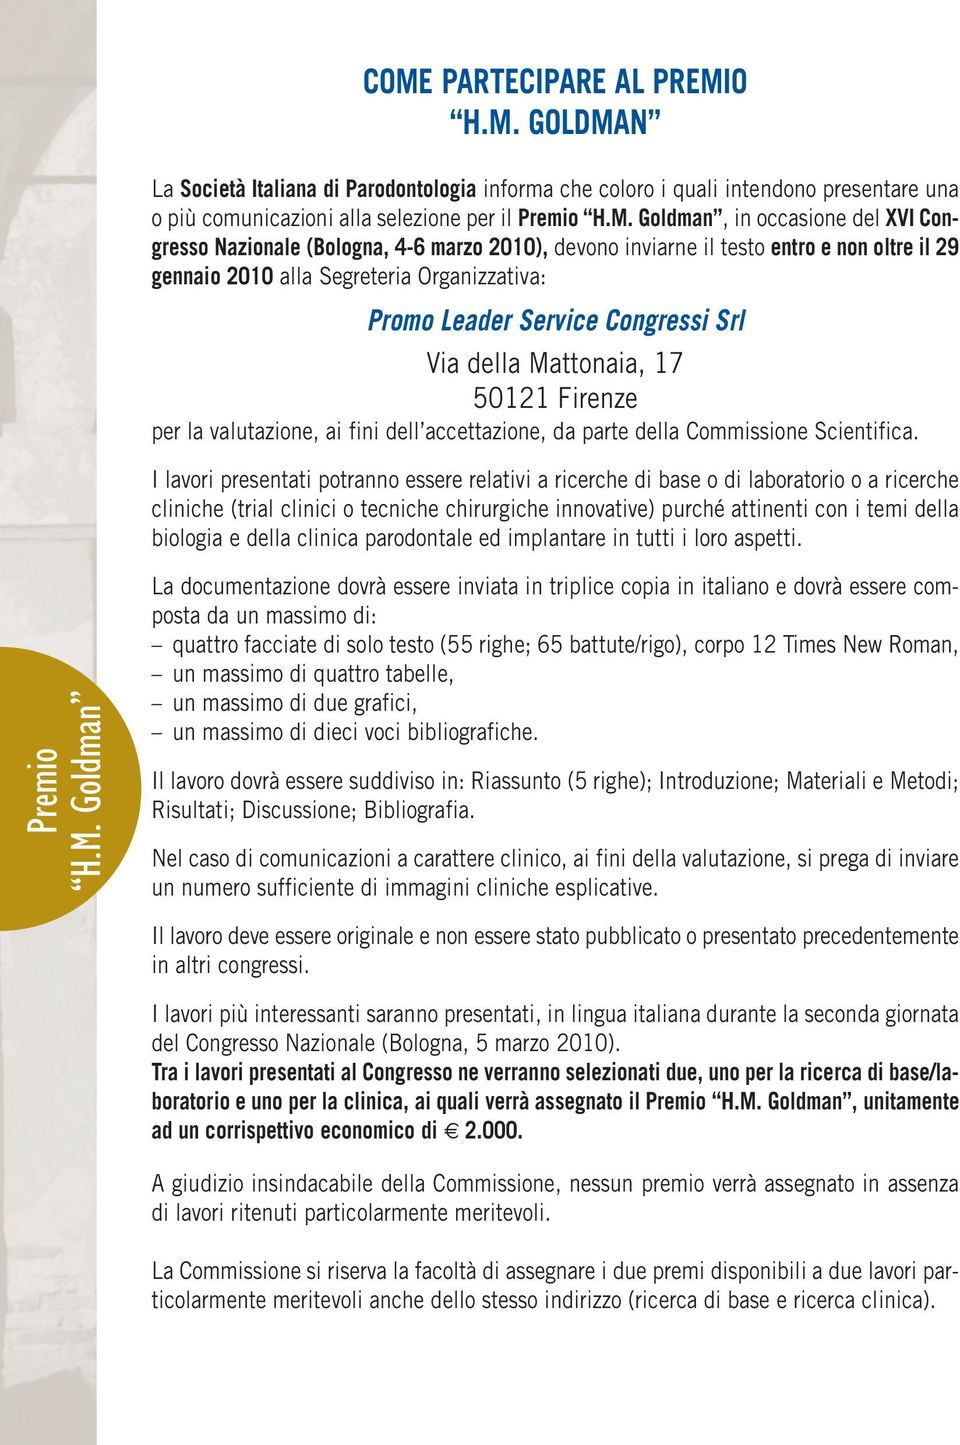 della Mattonaia, 17 50121 Firenze per la valutazione, ai fini dell accettazione, da parte della Commissione Scientifica.